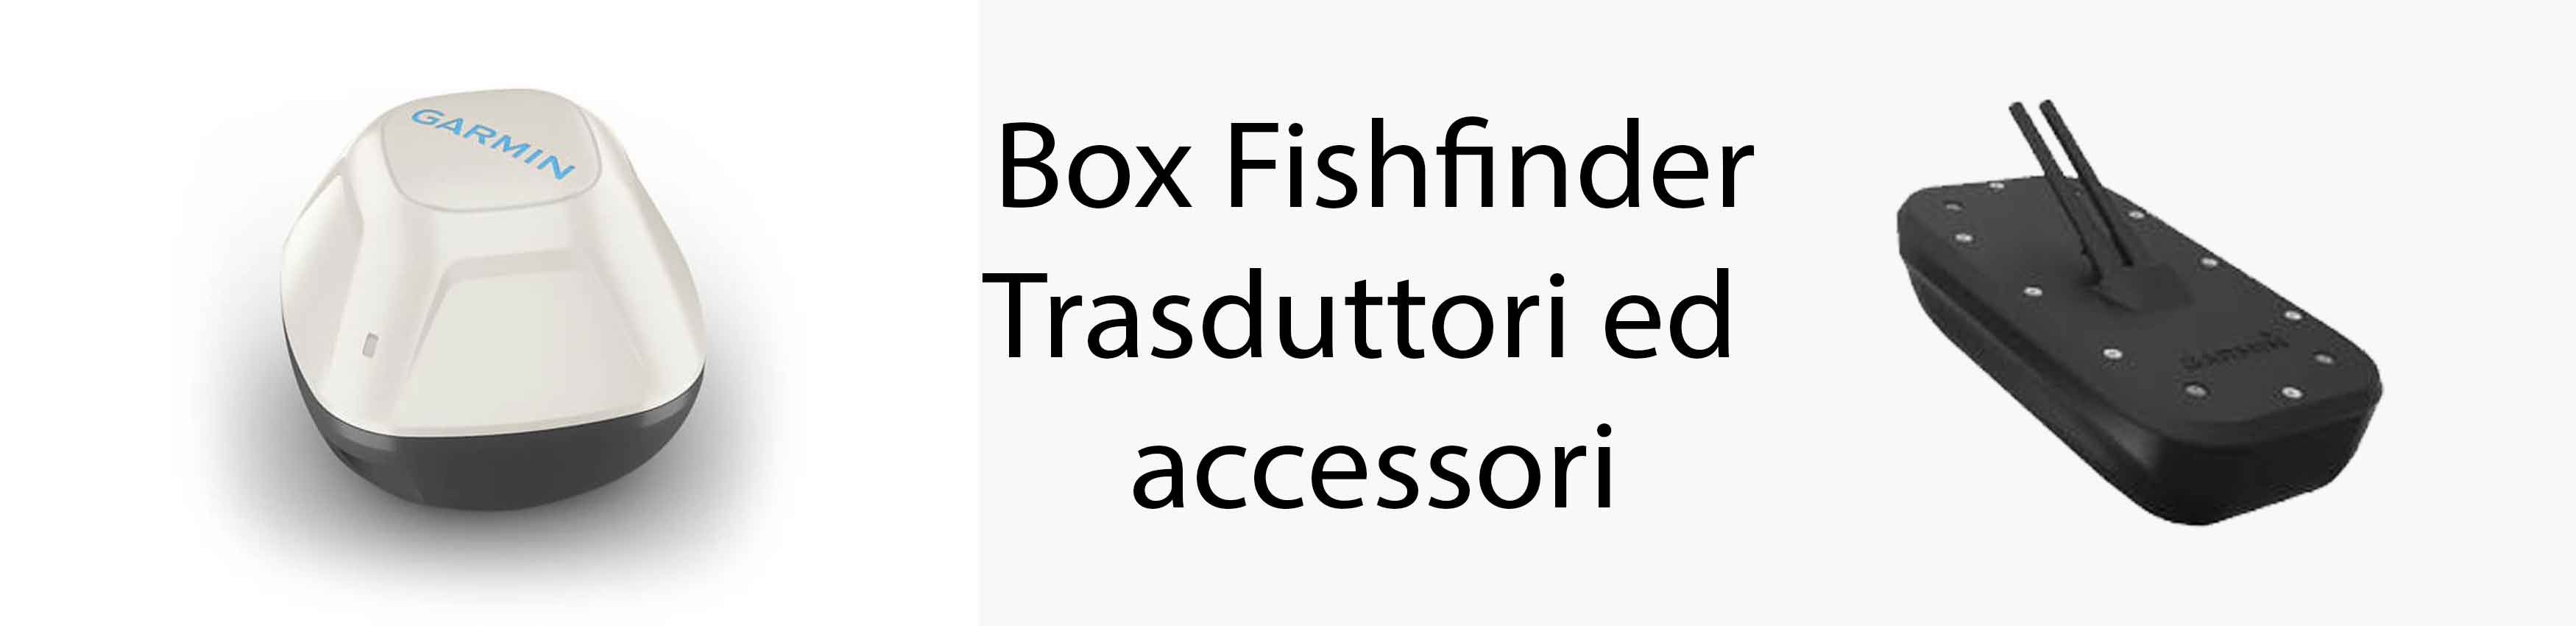 Box Fishfinder, Trasduttori ed accessori